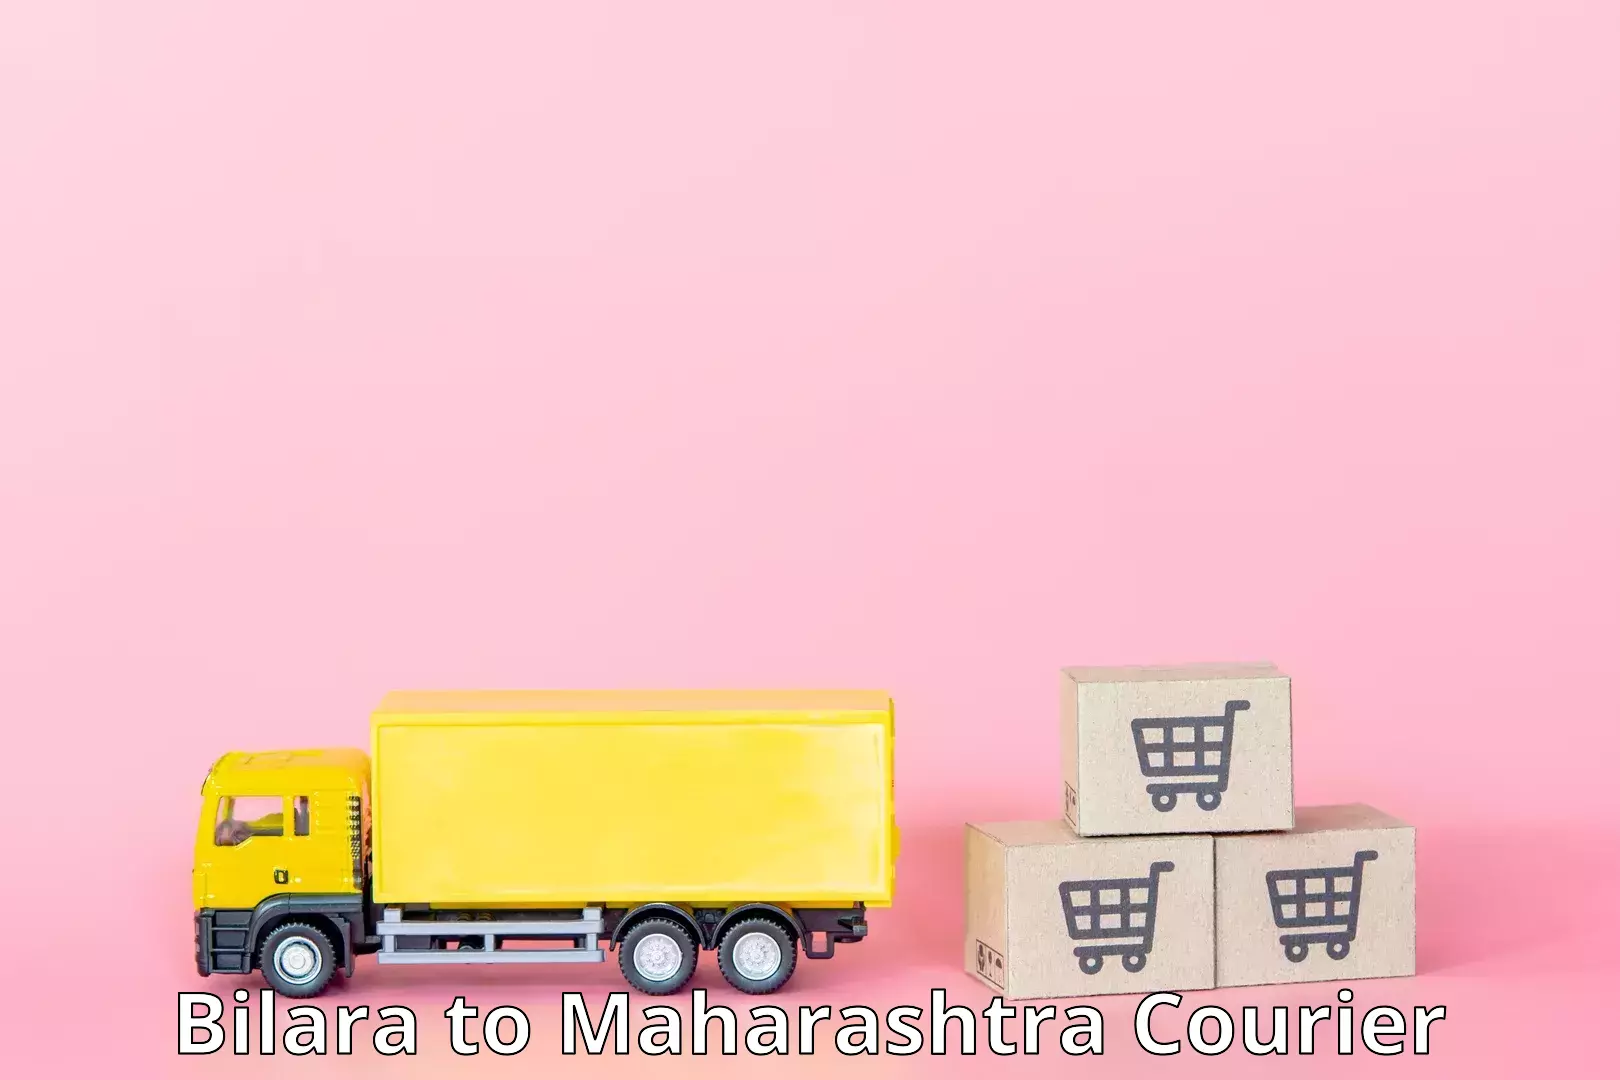 Delivery service partnership Bilara to Maharashtra